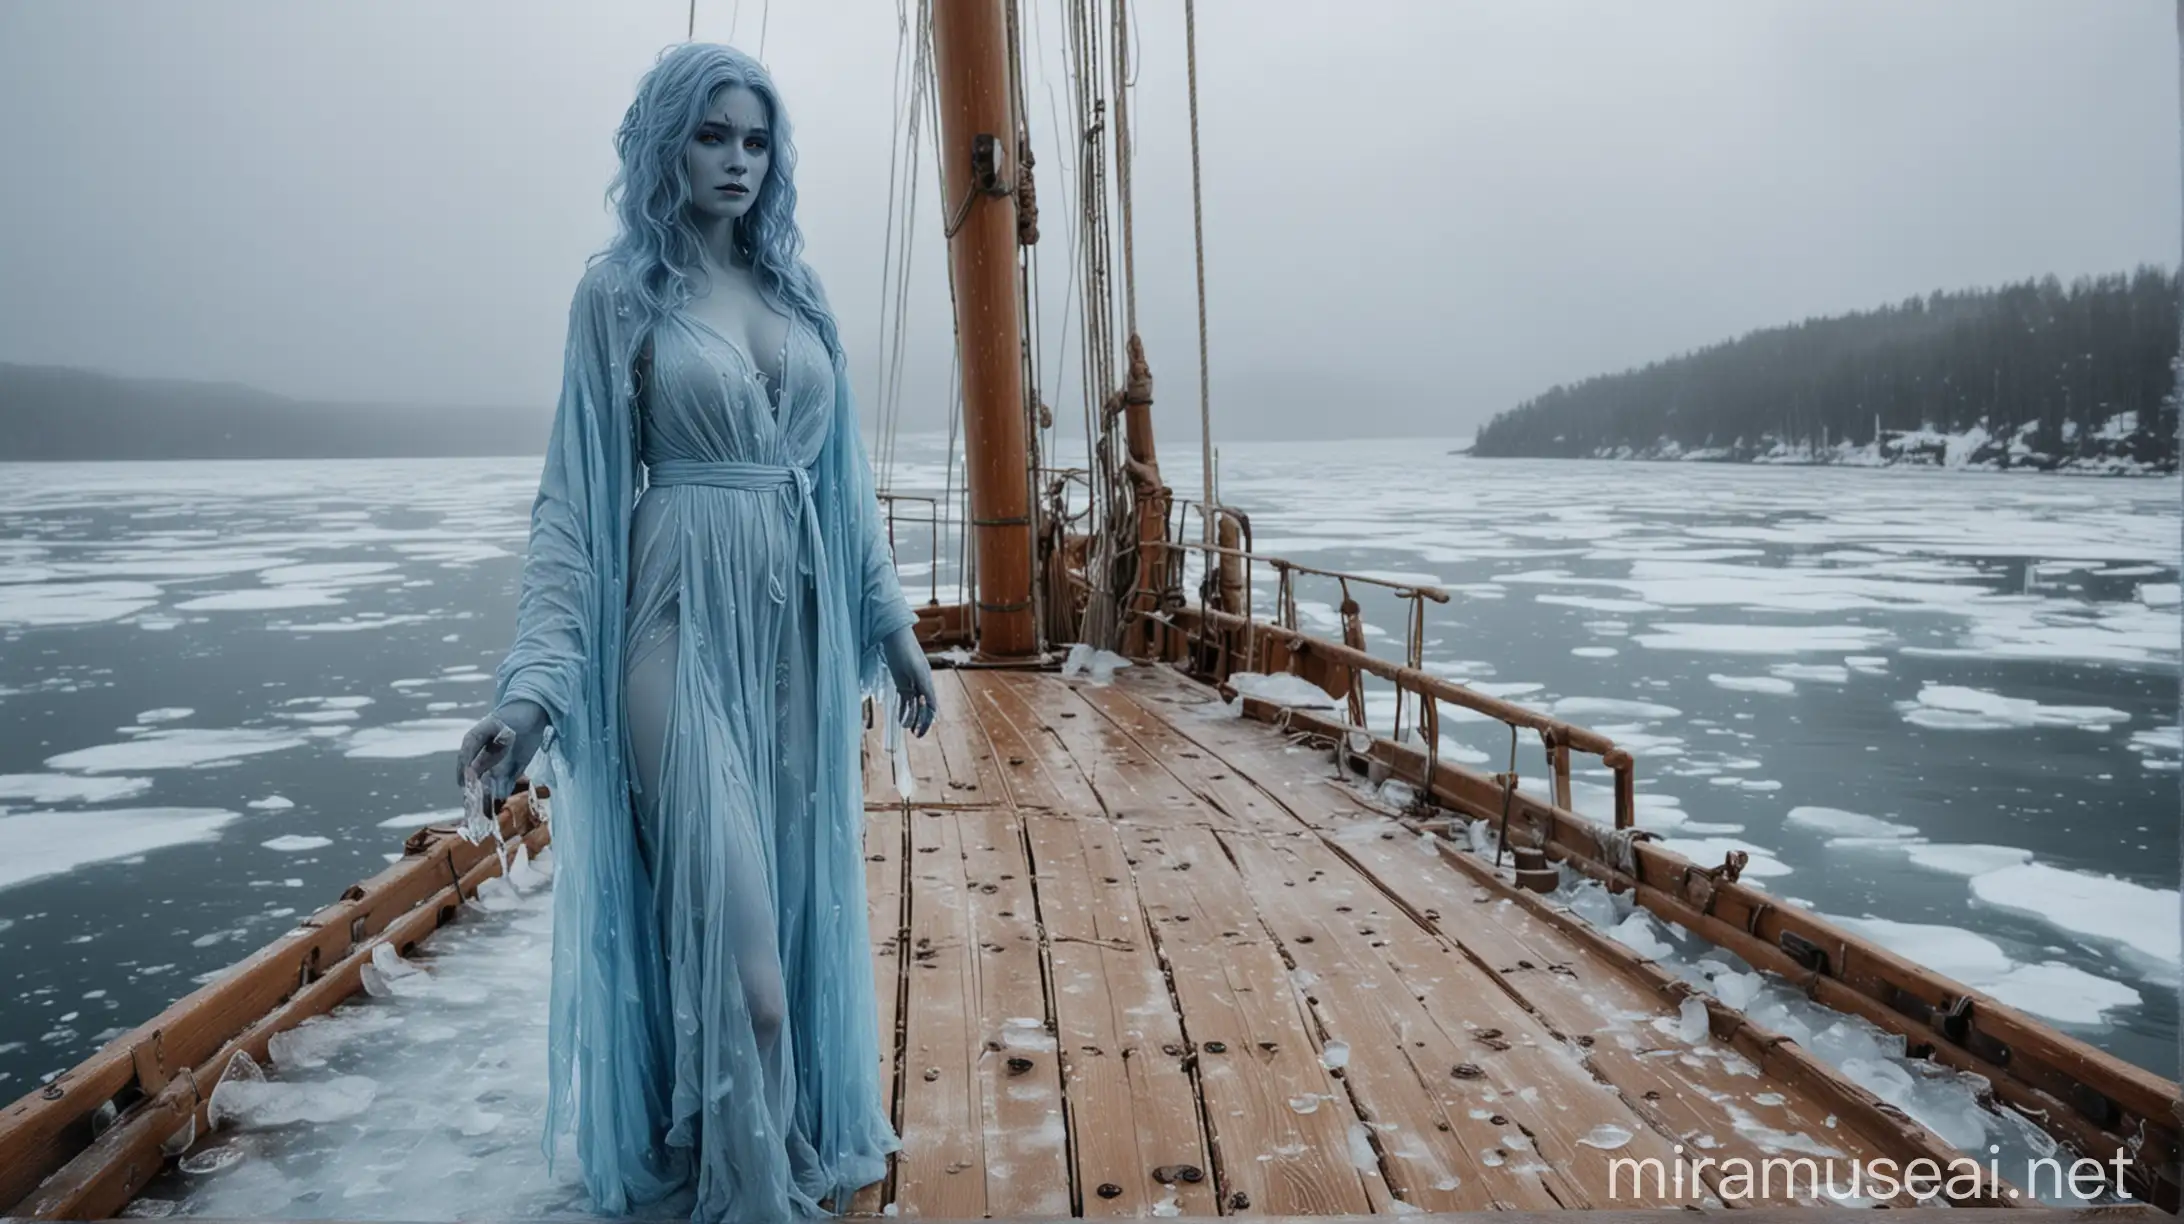 Трёхметровая массивная красивая девушка с синей кожей, в одеяниях изо льда, стоит на деревянной палубе коробля